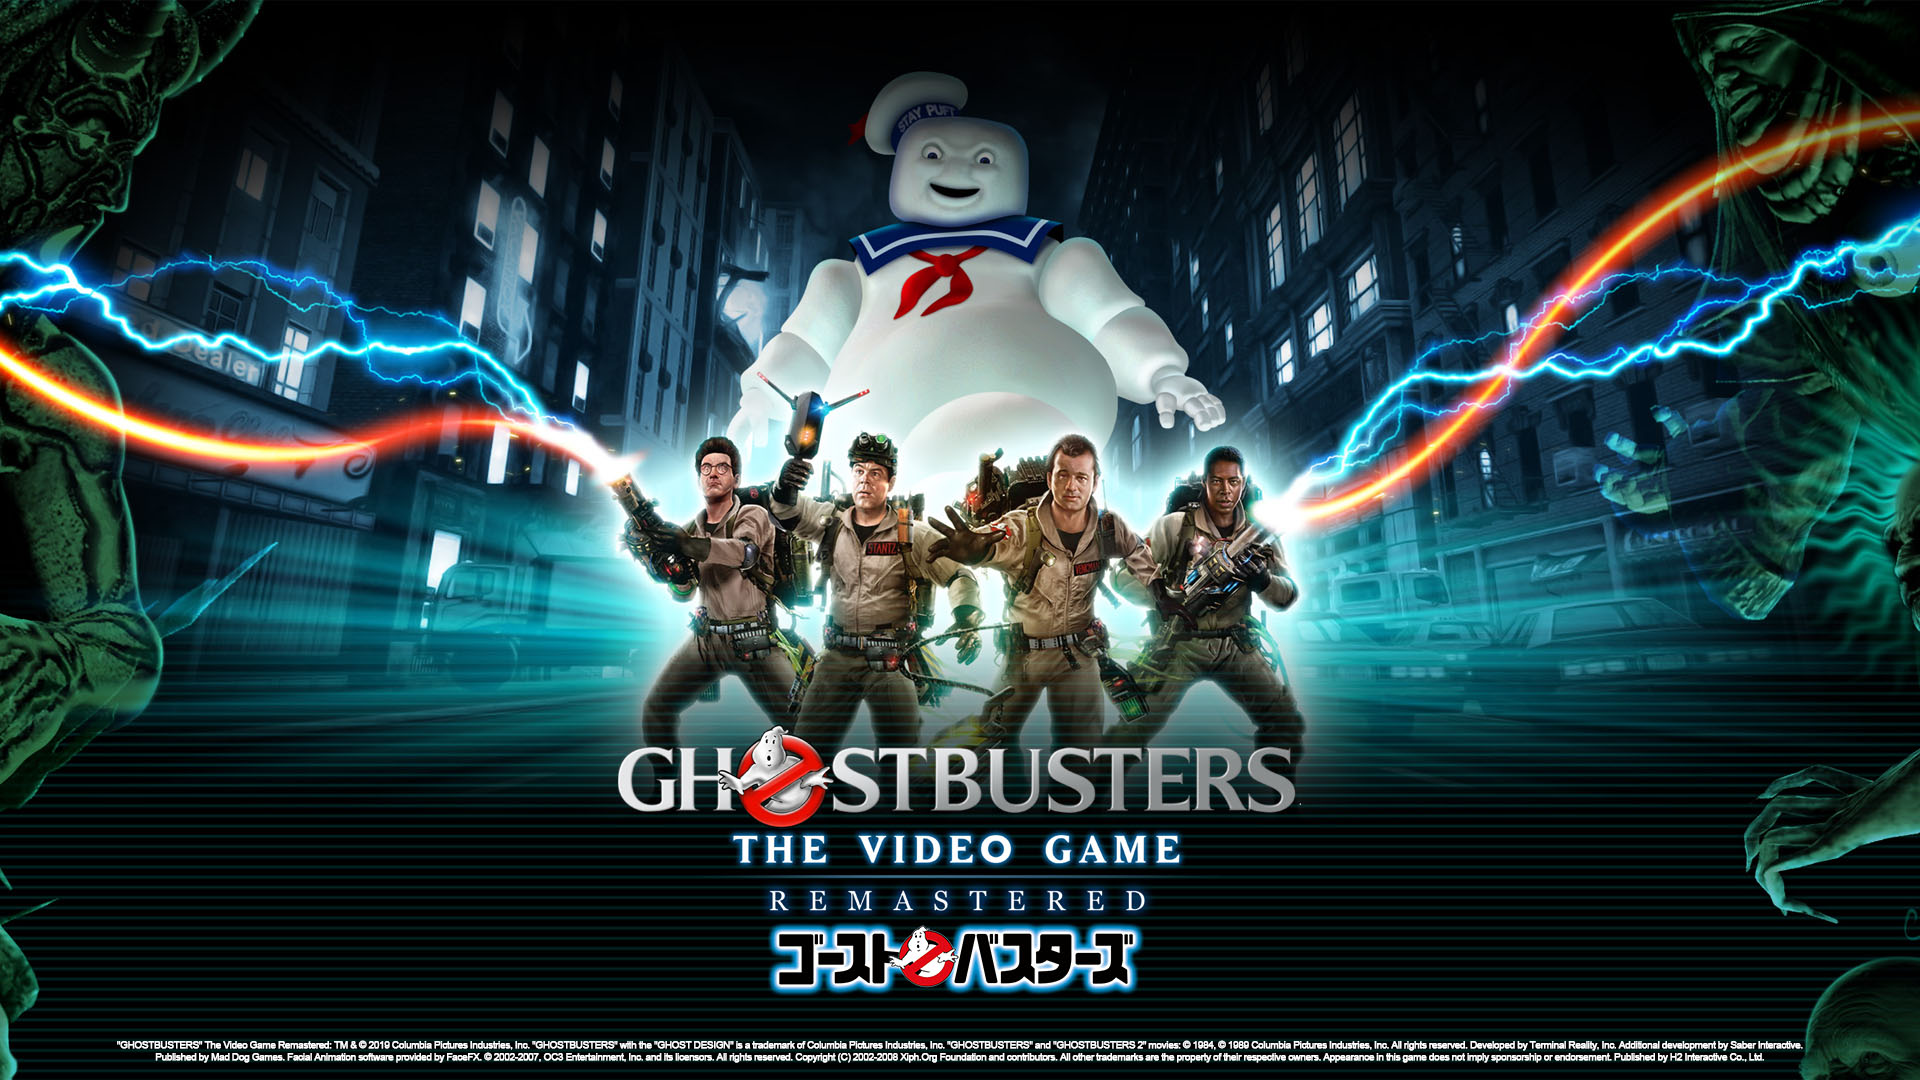 映画 ゴーストバスターズ のゲーム Ghostbusters The Video Game ニコニコニュース